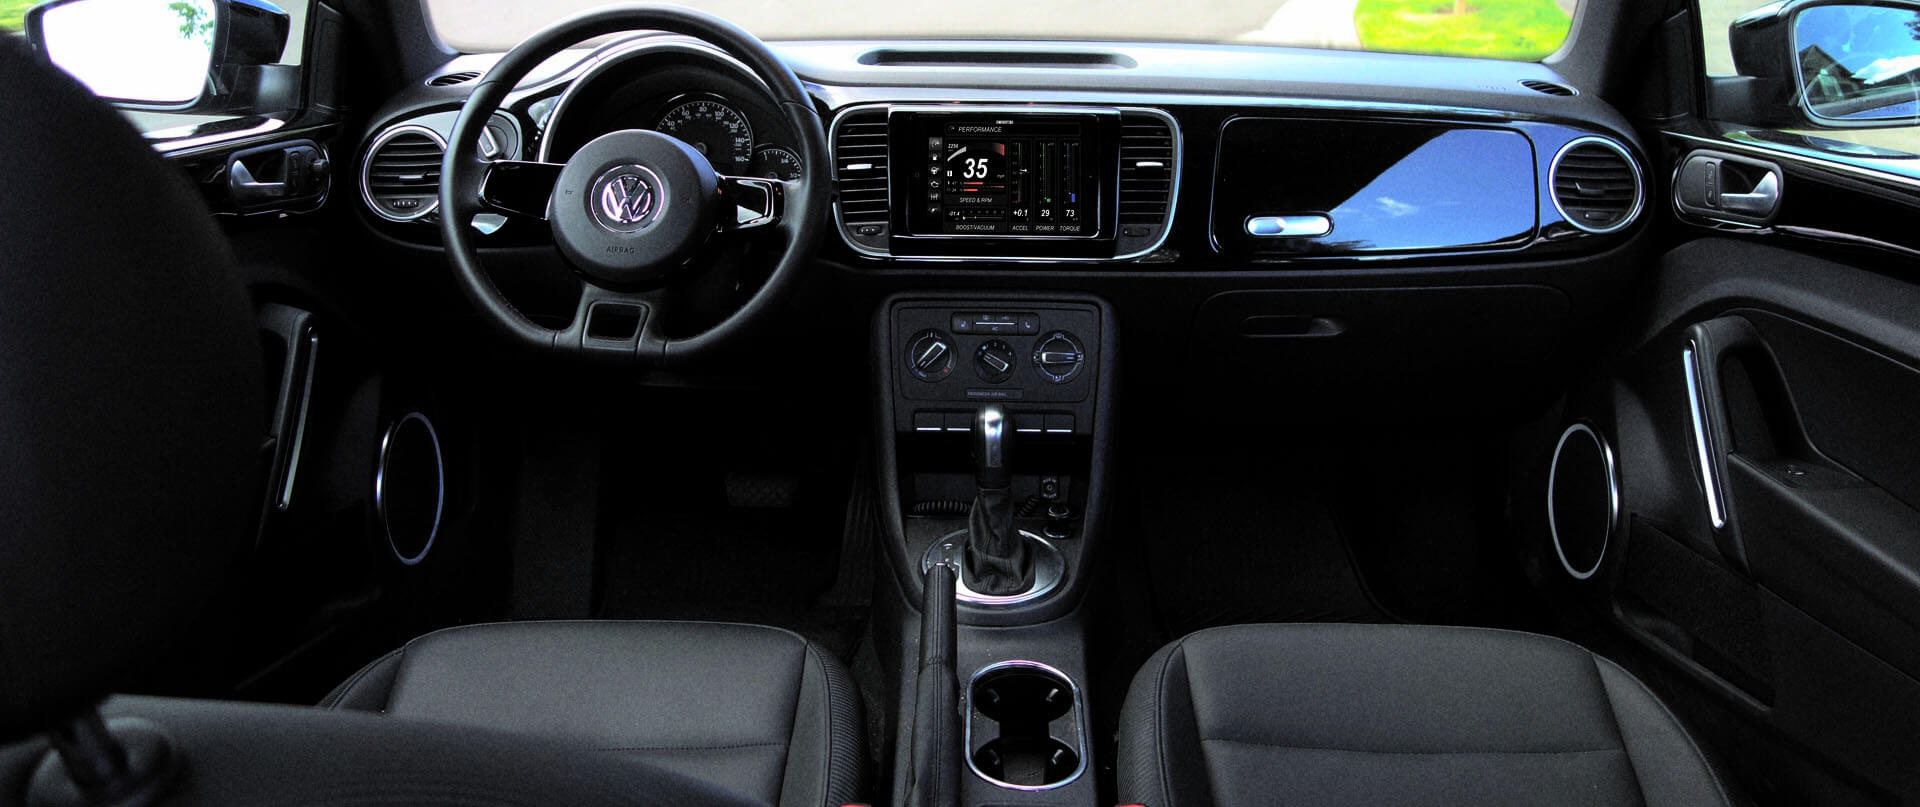 Volkswagen Golf-gti dash kit